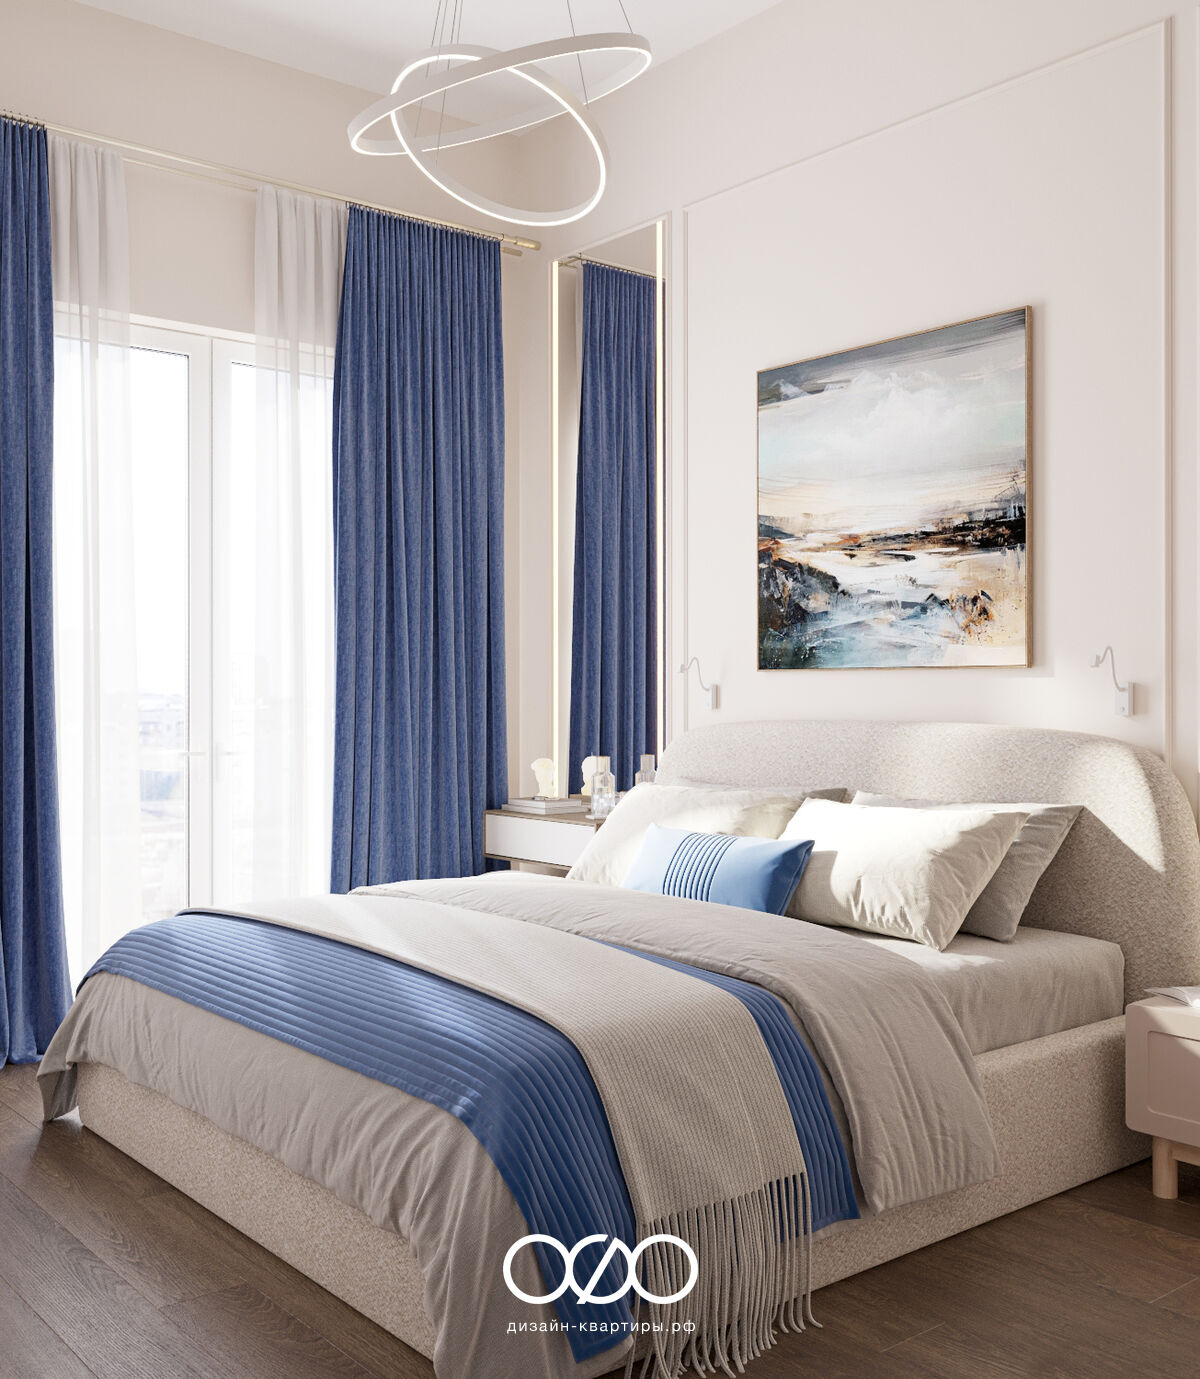 Дизайн спальни в синих тонах